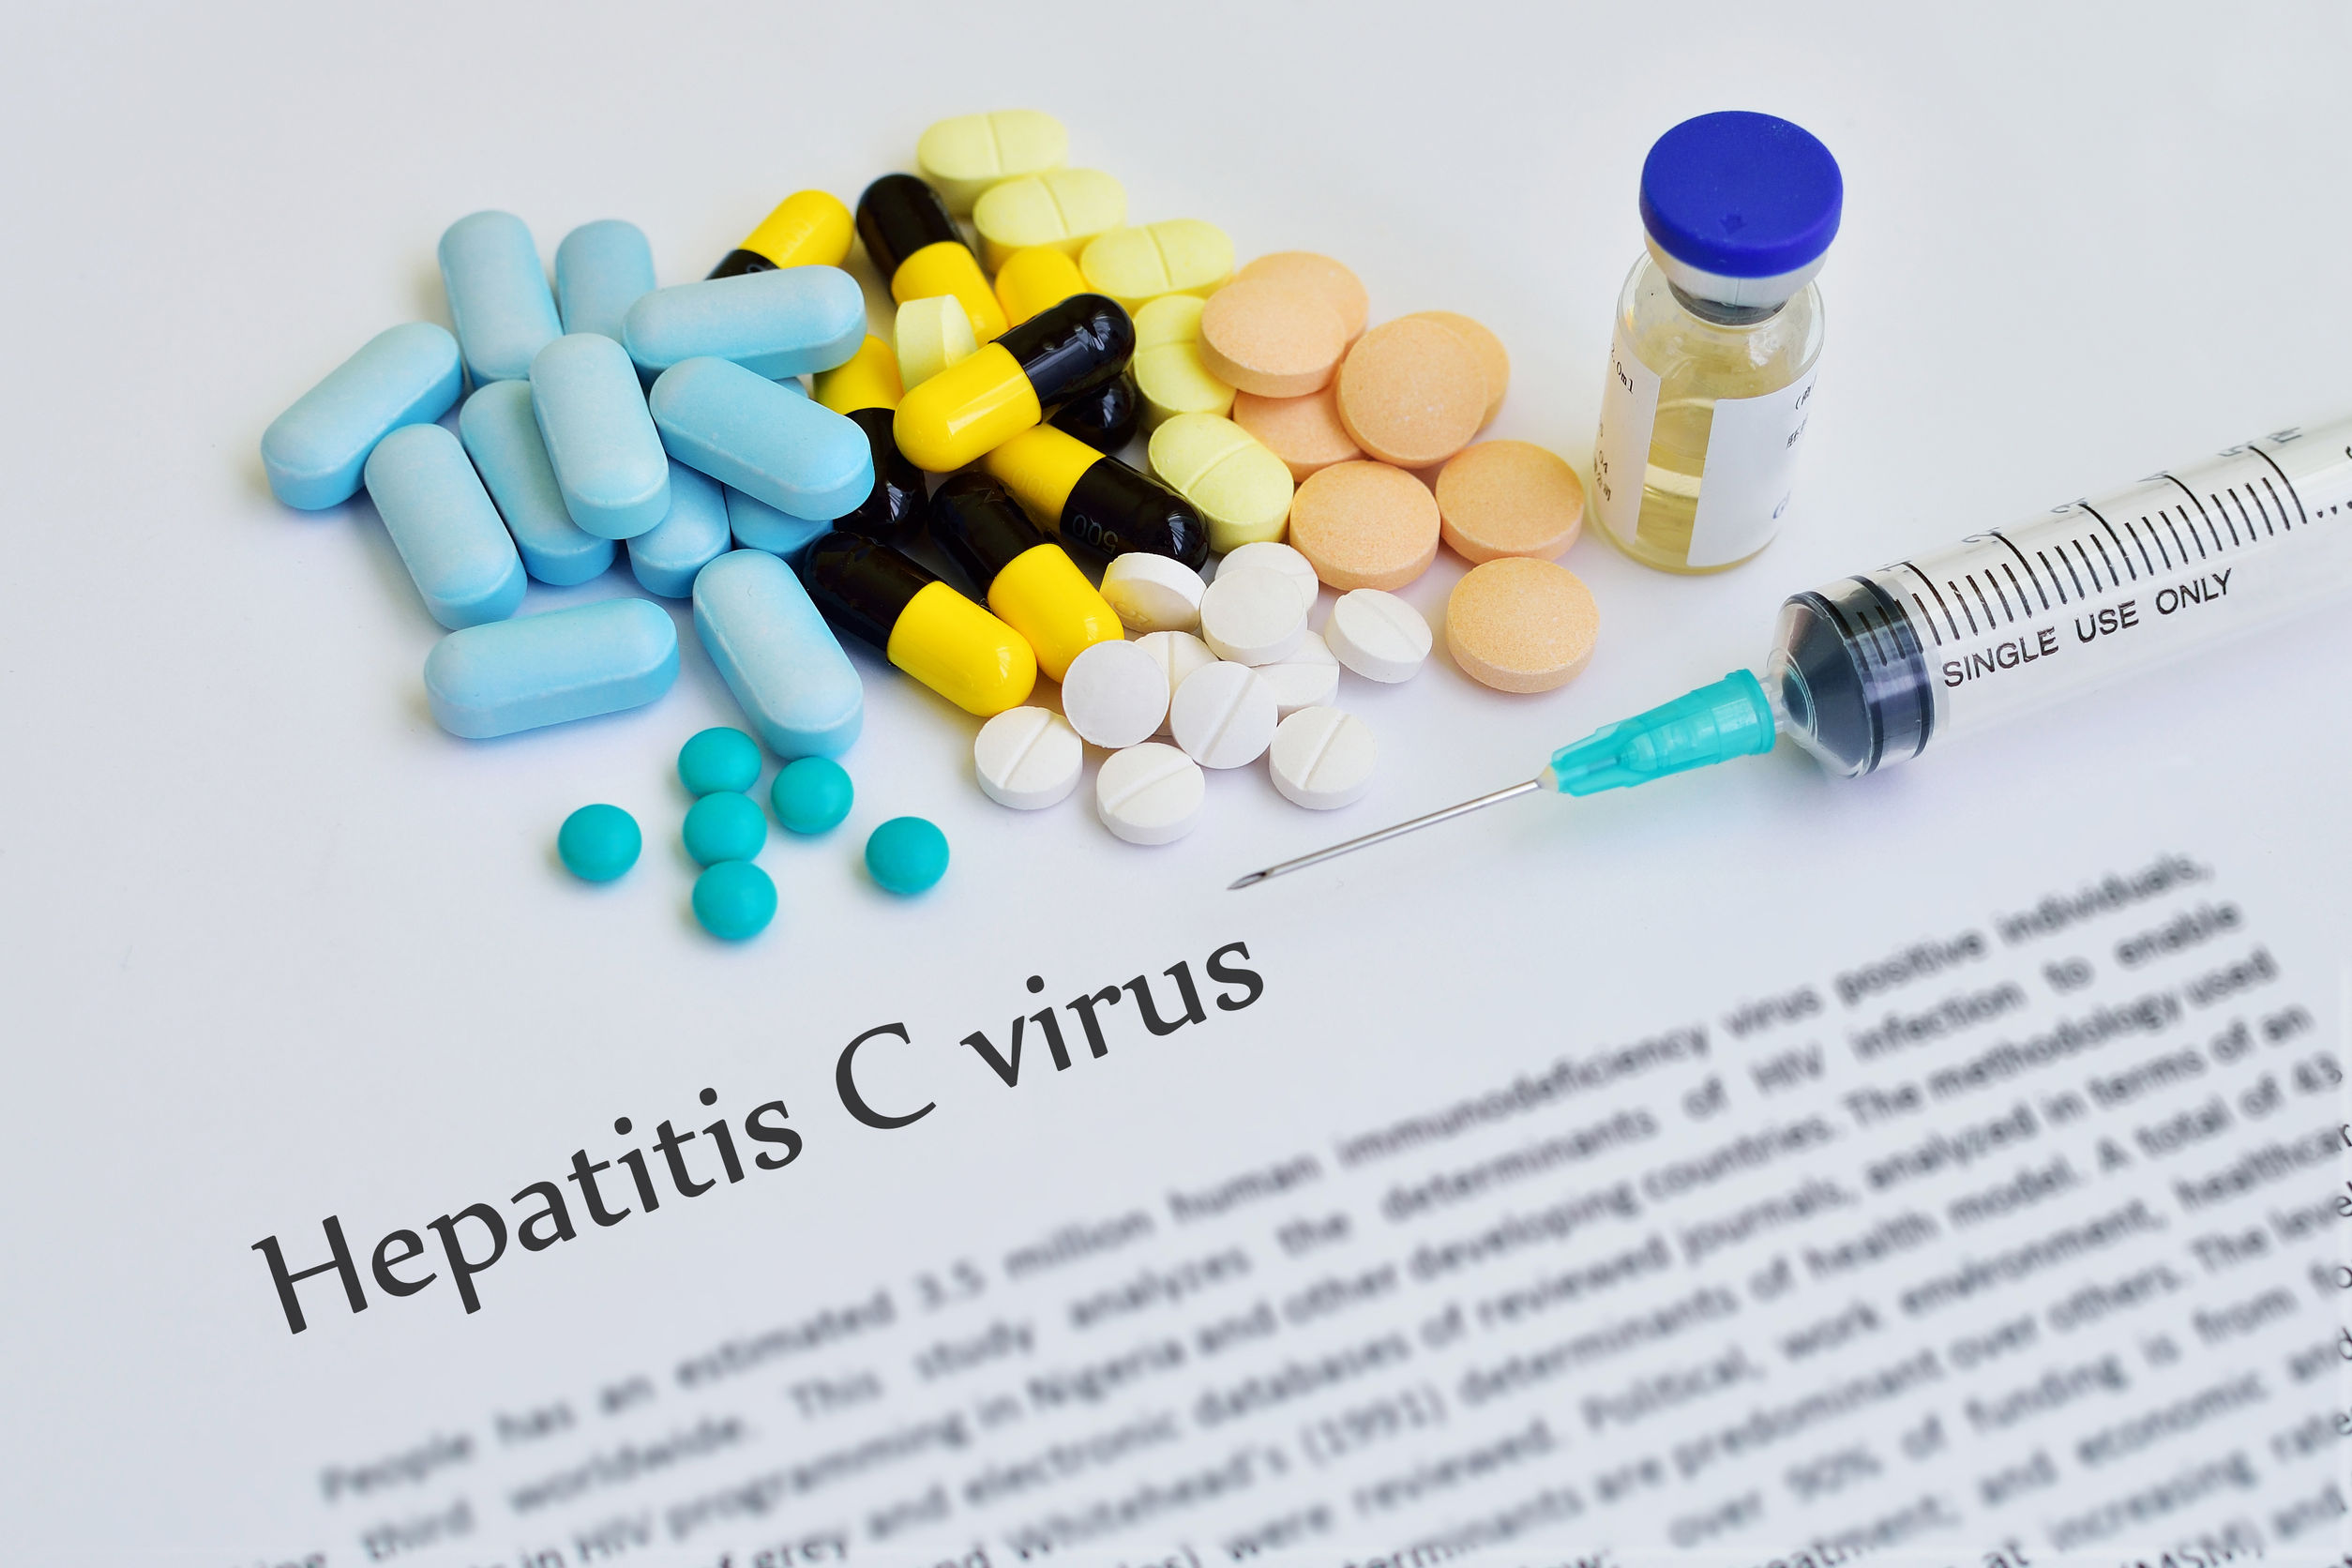 hepatitis c virus pills and needles